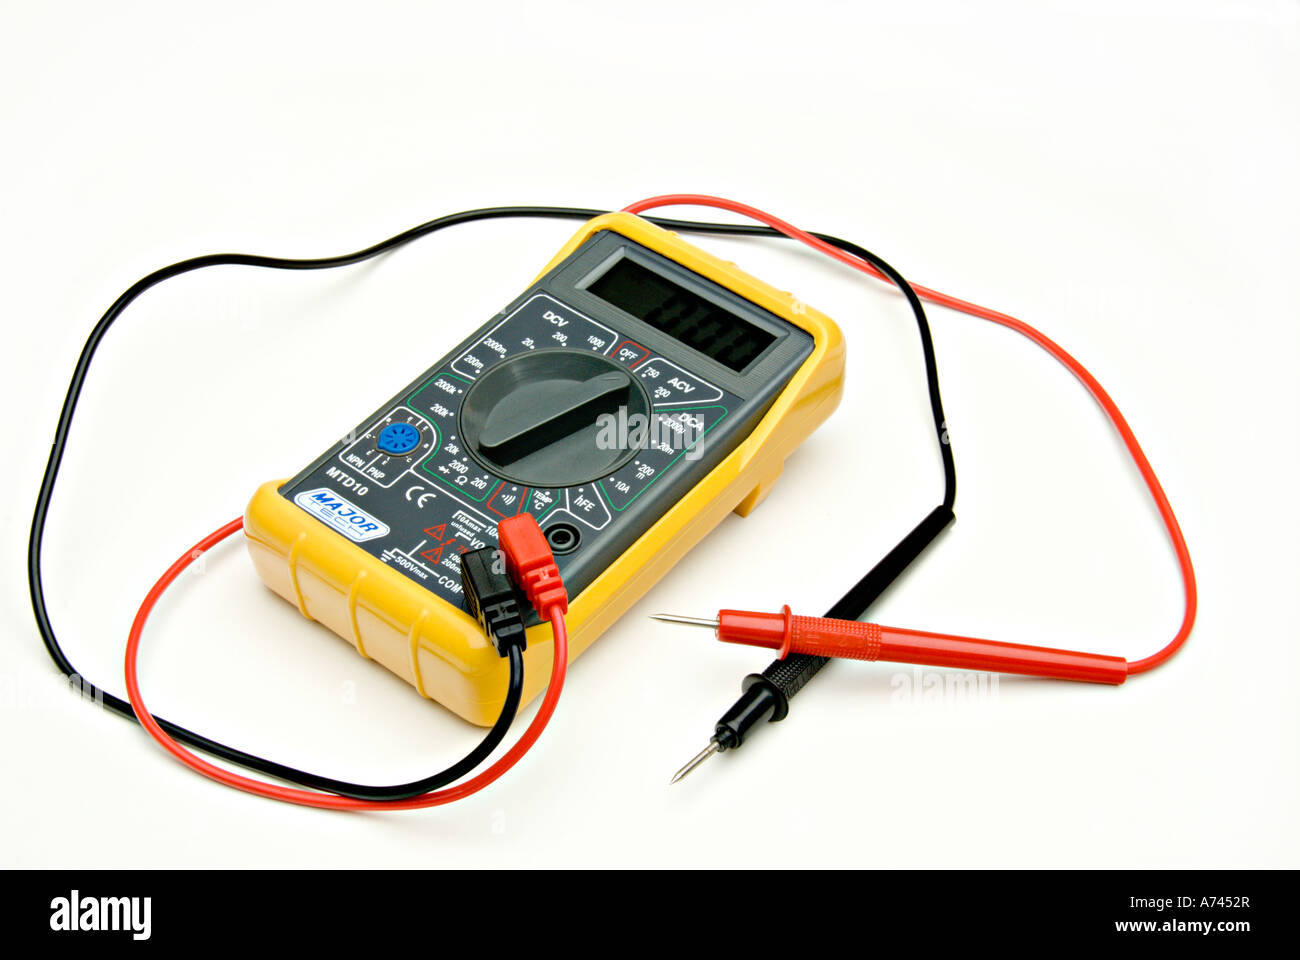 Amp volt reader on white background Stock Photo